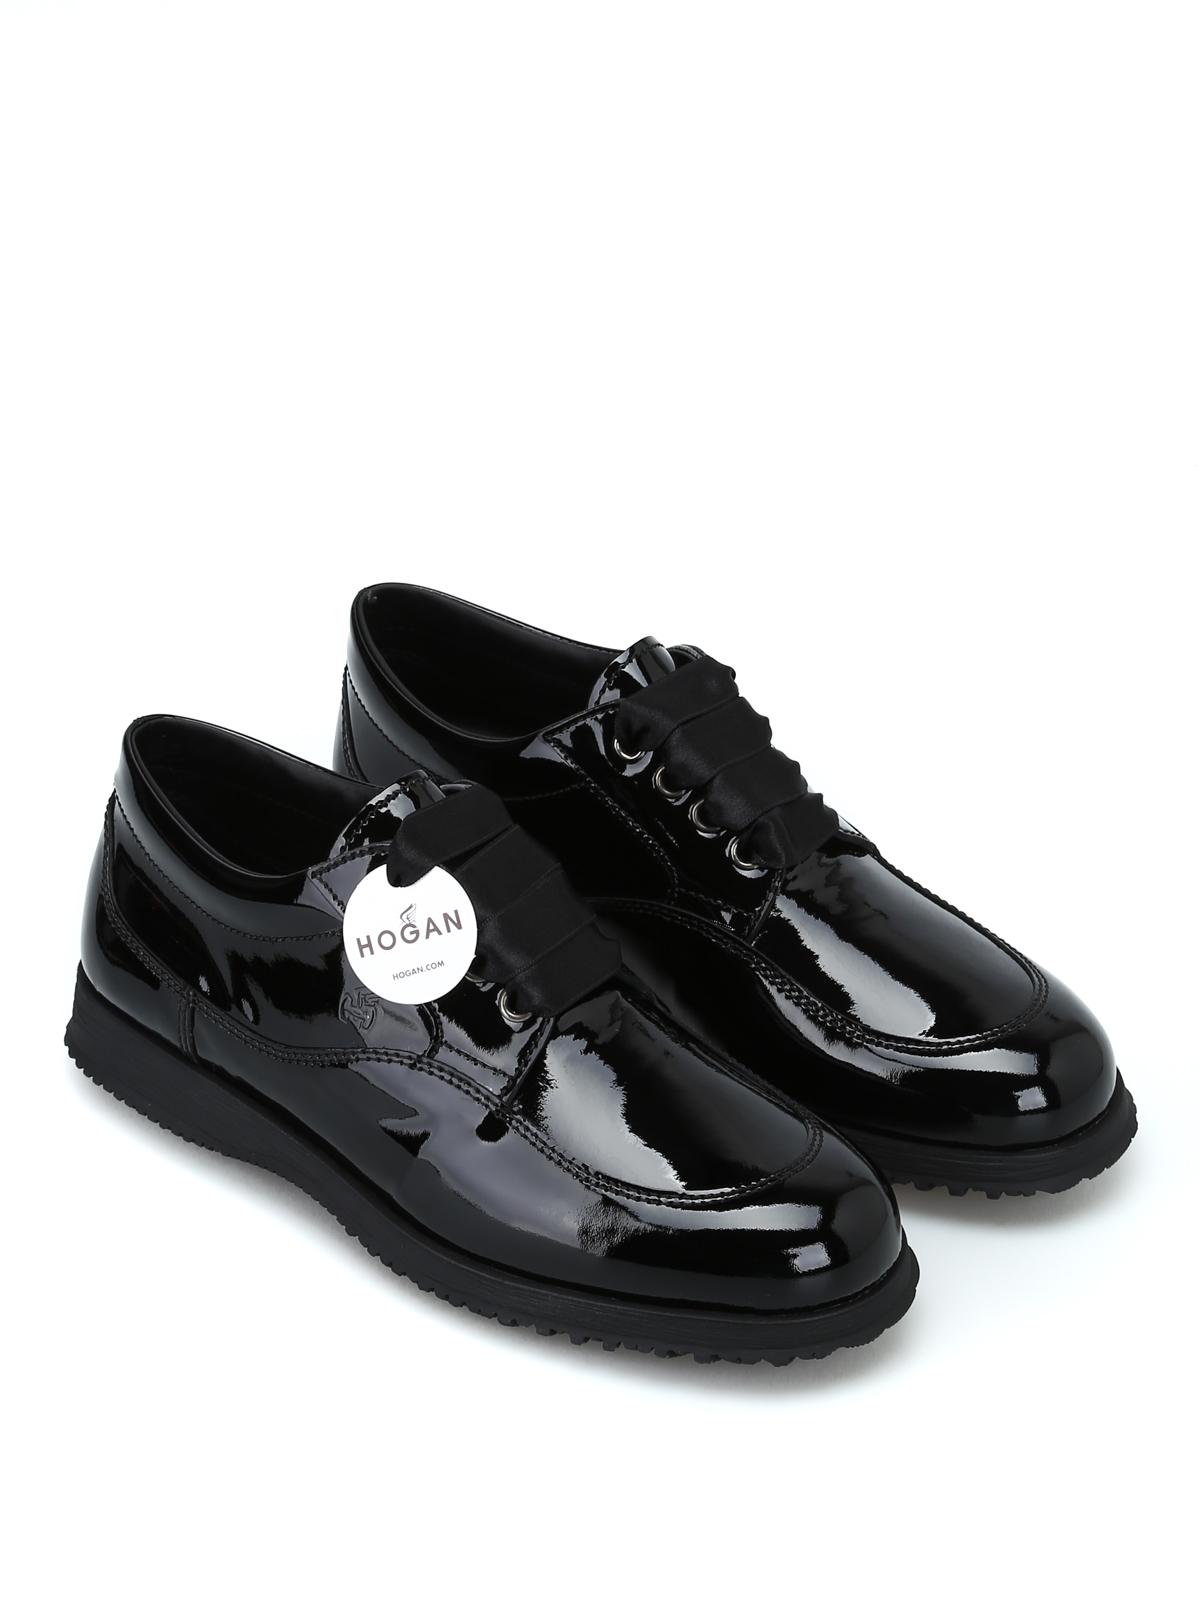 Chaussures à lacets Cuir Hogan en coloris Noir Femme Chaussures Chaussures plates Chaussures et bottes à lacets 